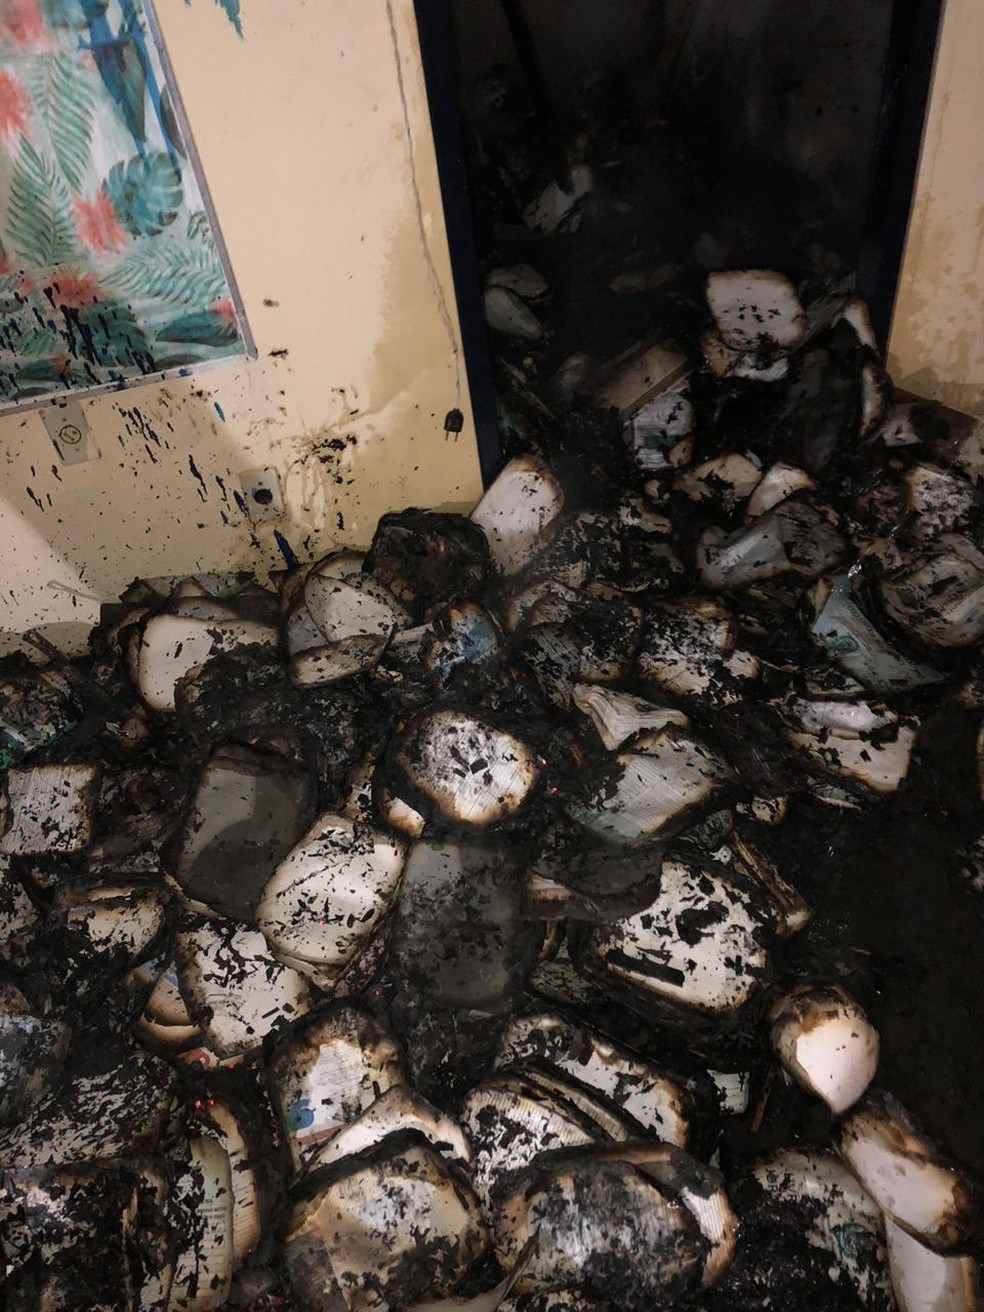 Livros-foram-queimados-na-escola-indigena-em-Aguas-Belas-Pernambuco.jpg